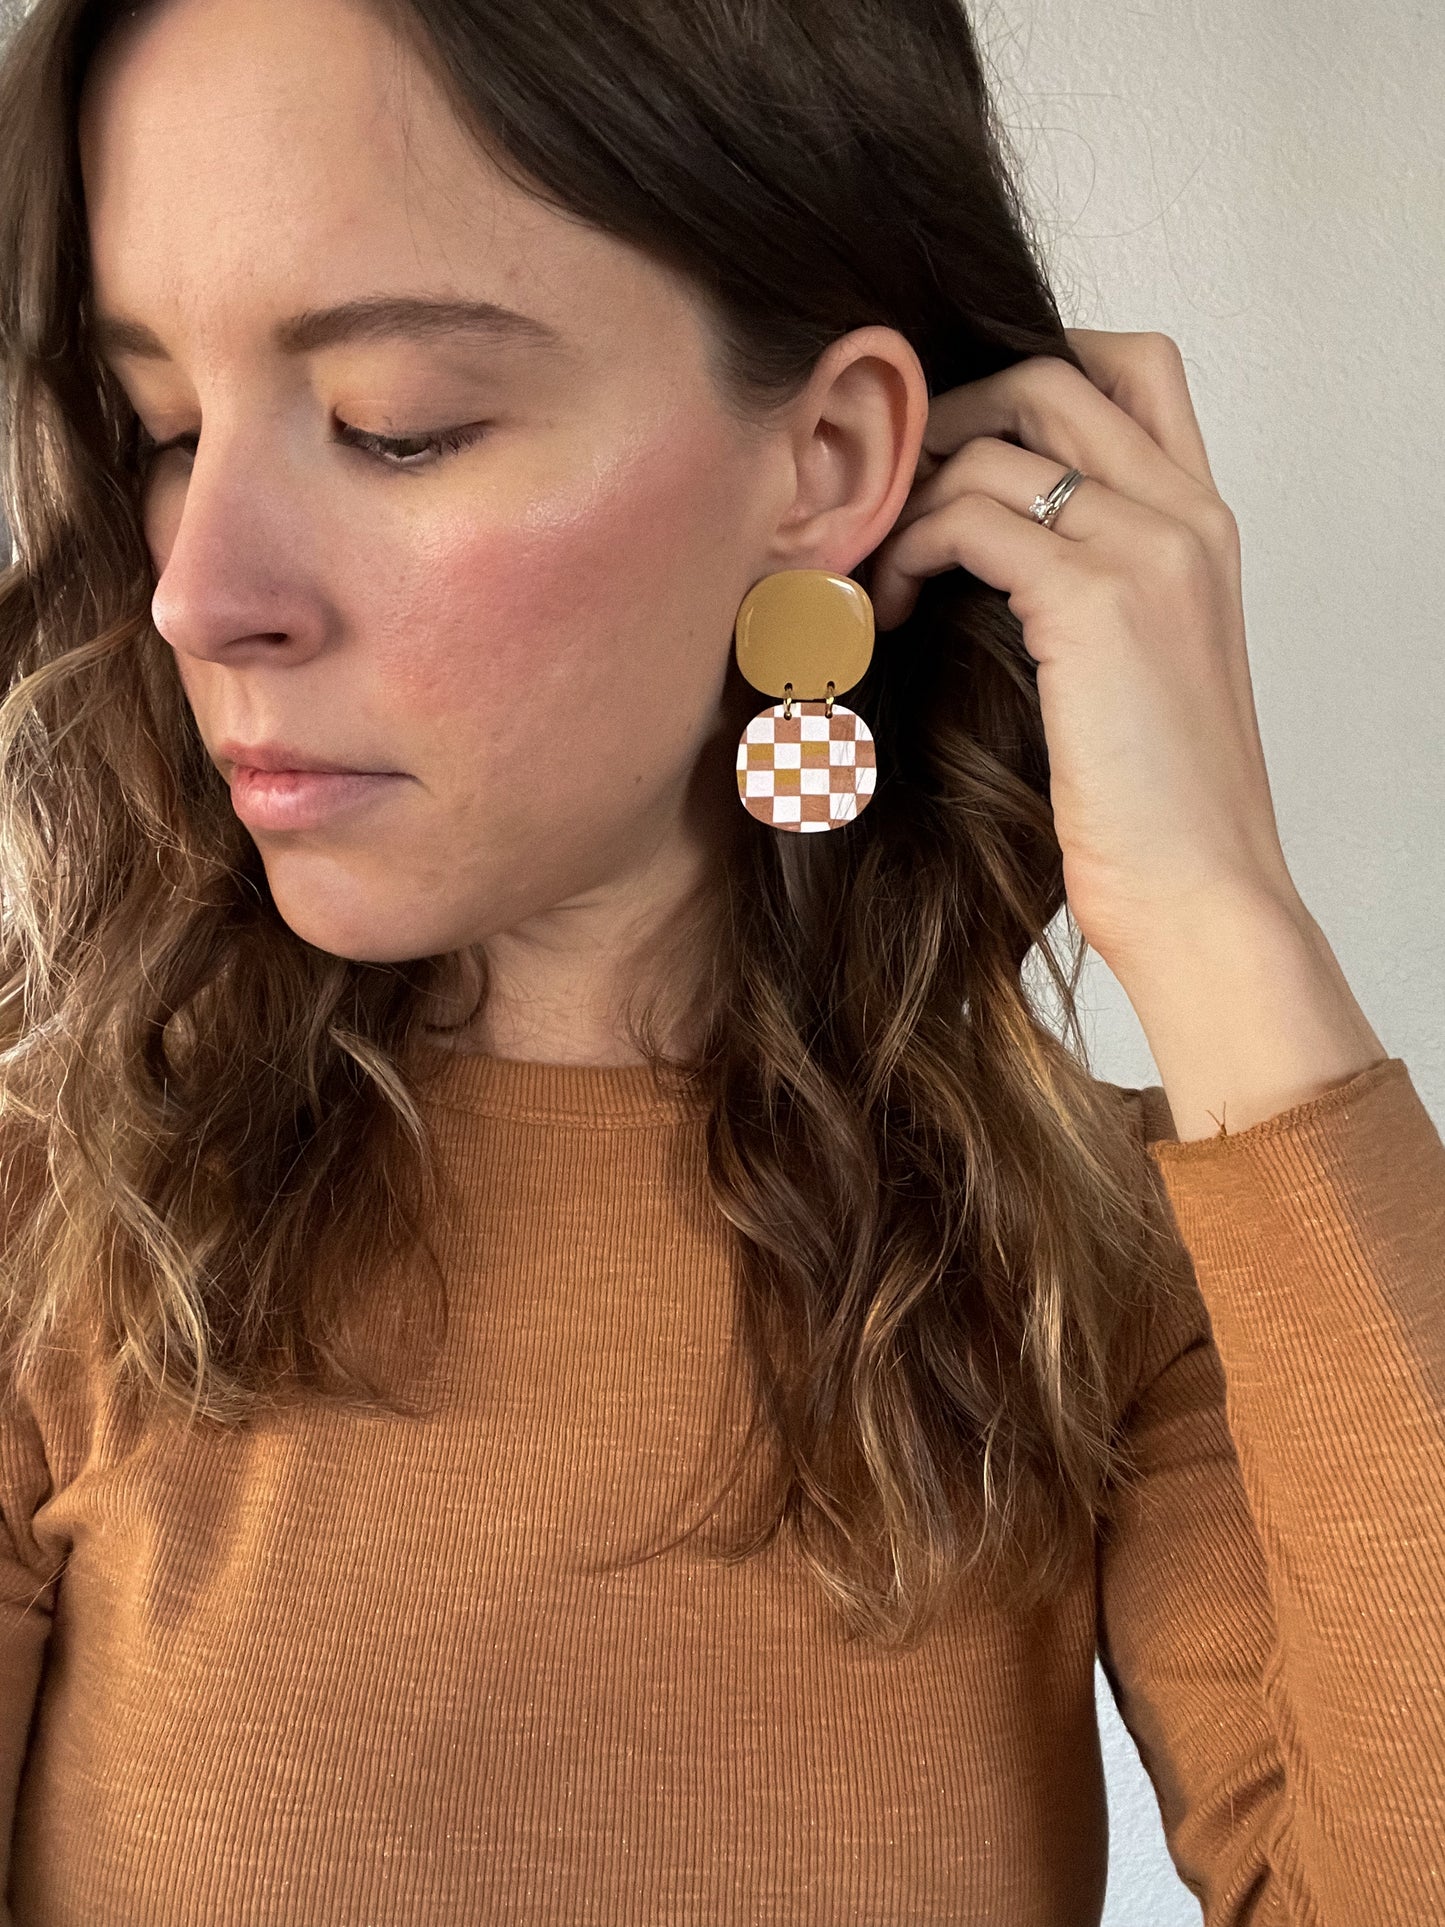 Etta Earrings in Marigold & Checkerboard